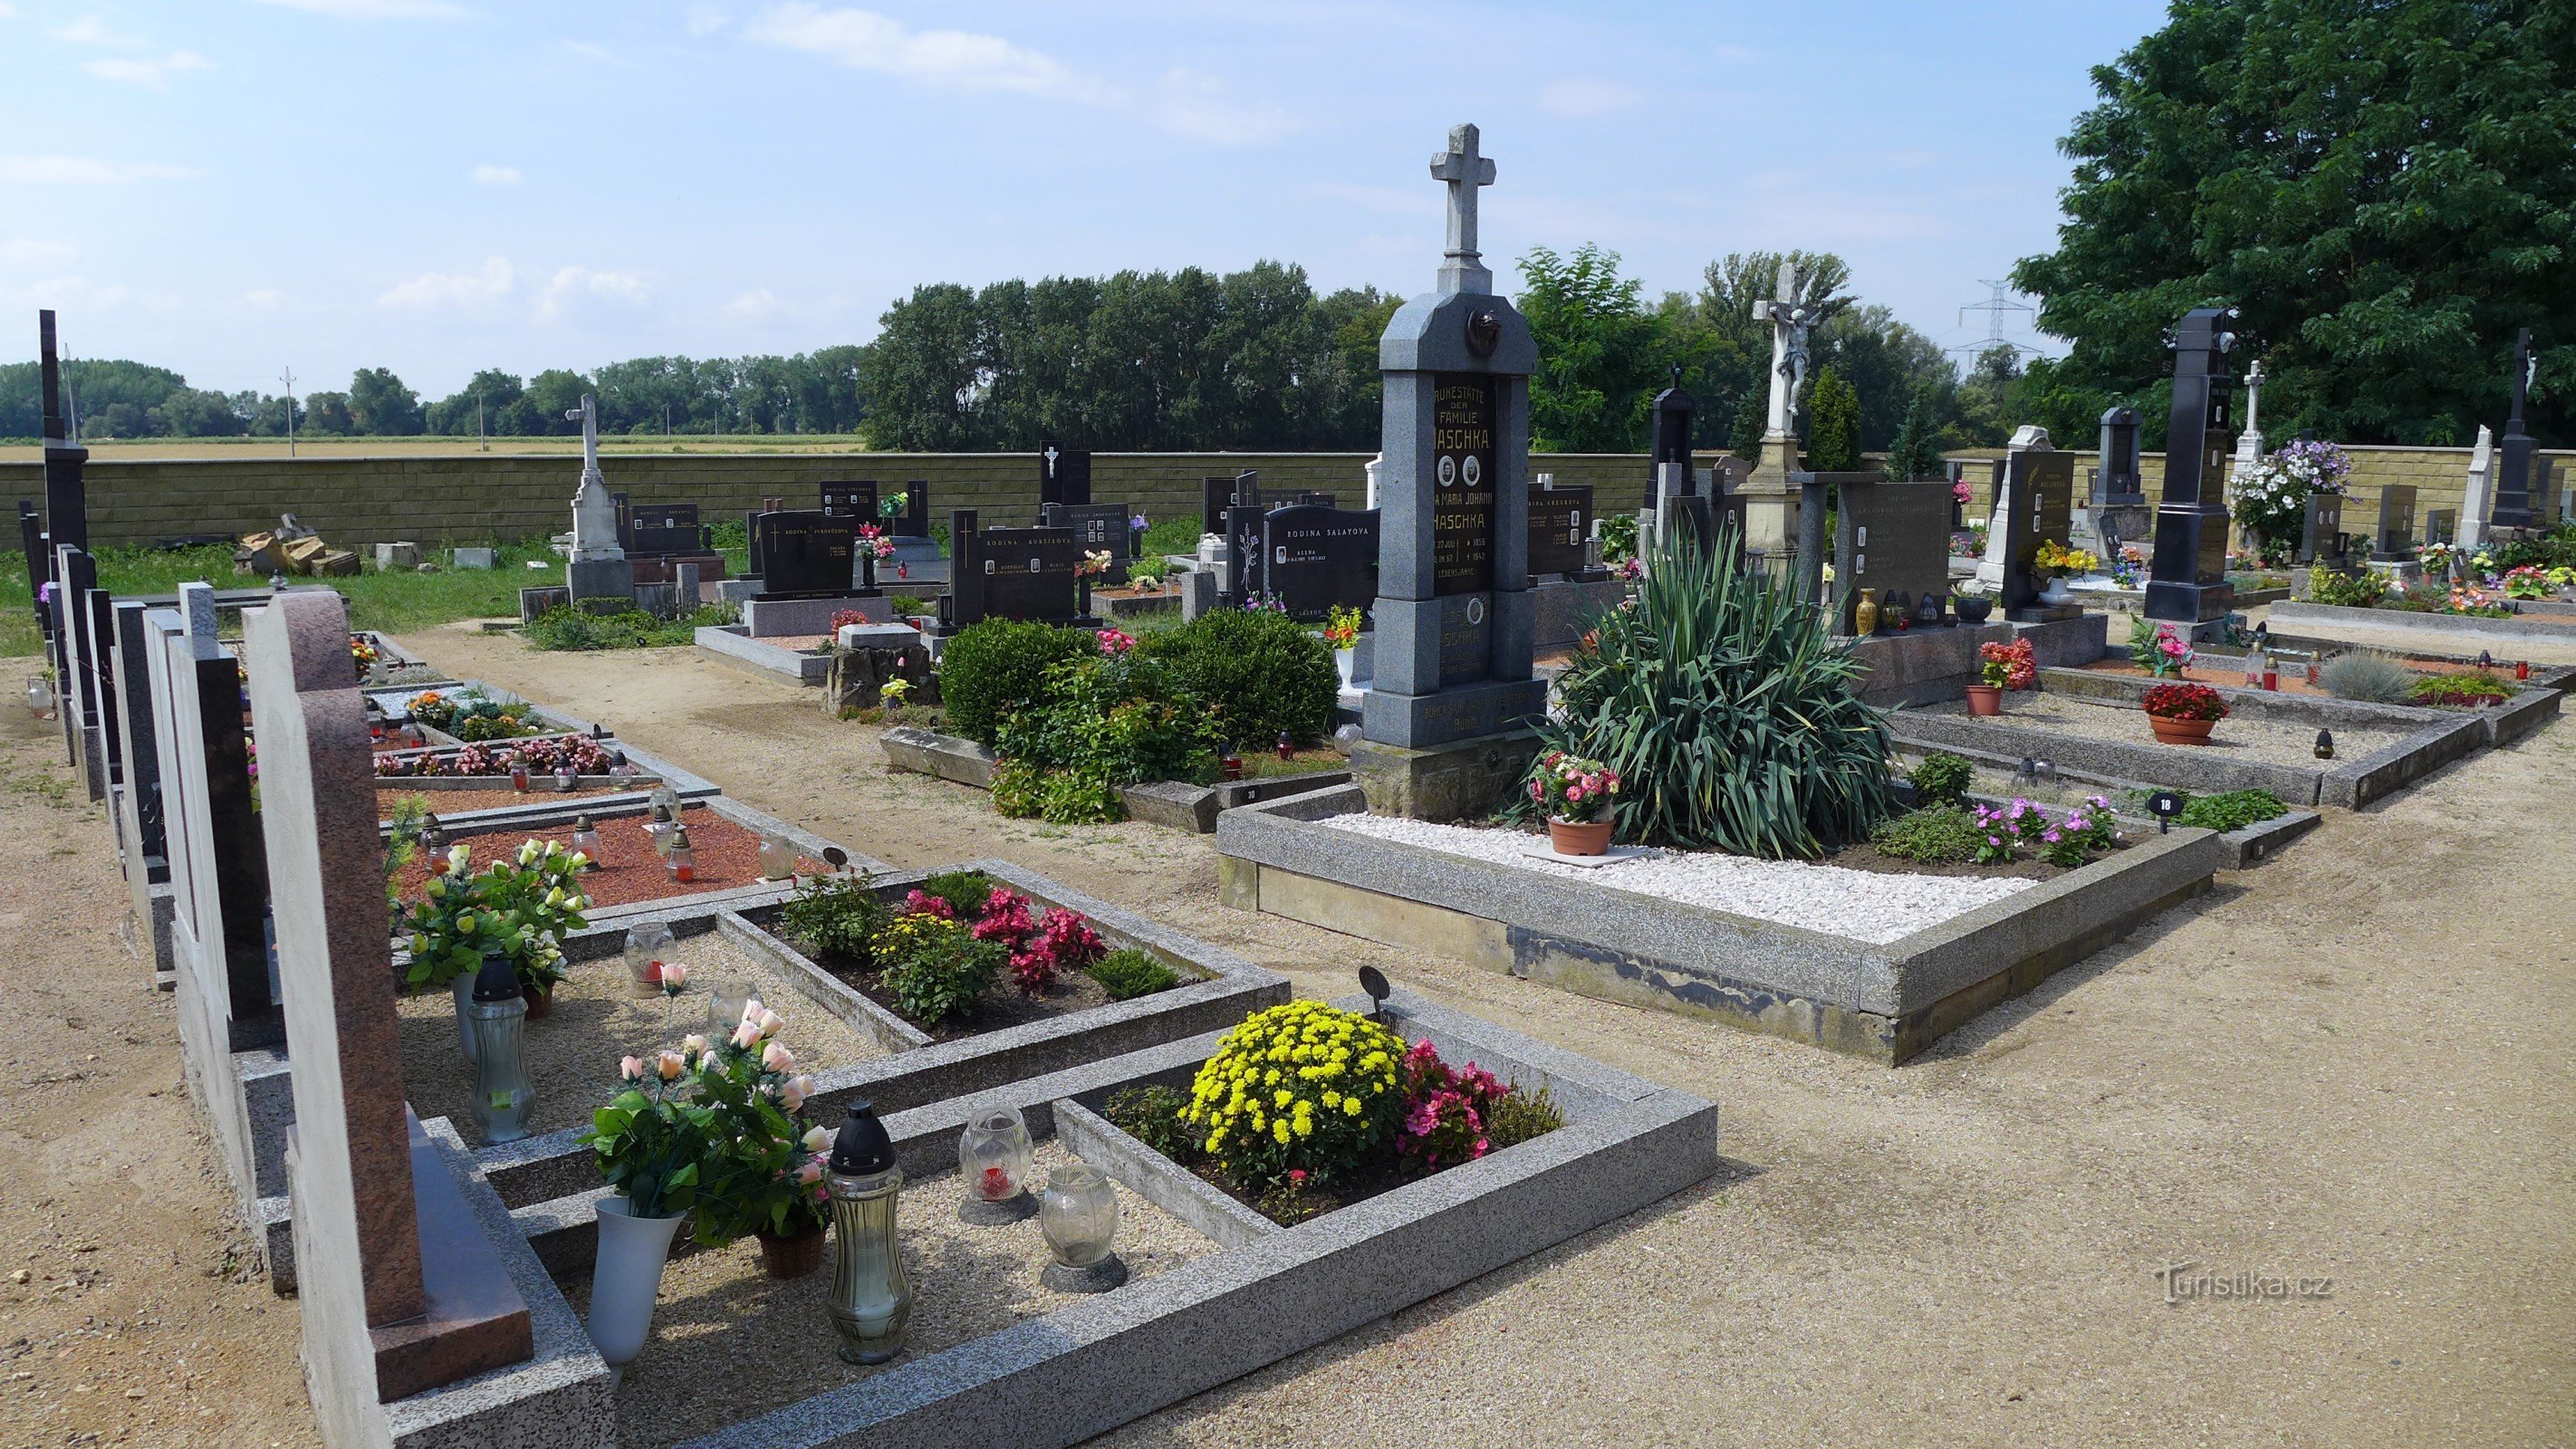 Nemčičky - begraafplaats